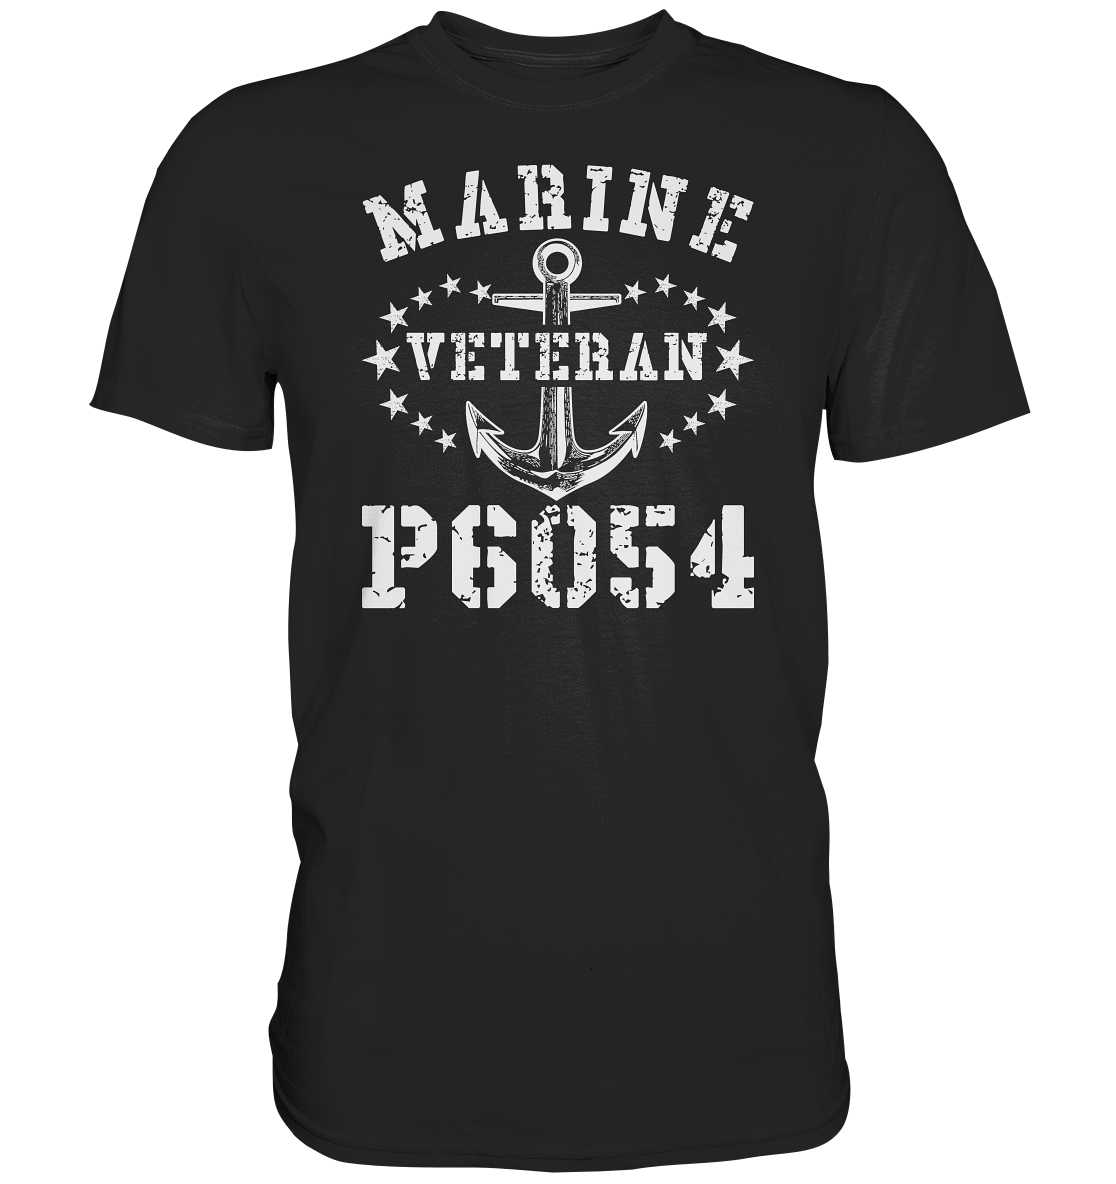 P6054 Veteran - Premium Shirt